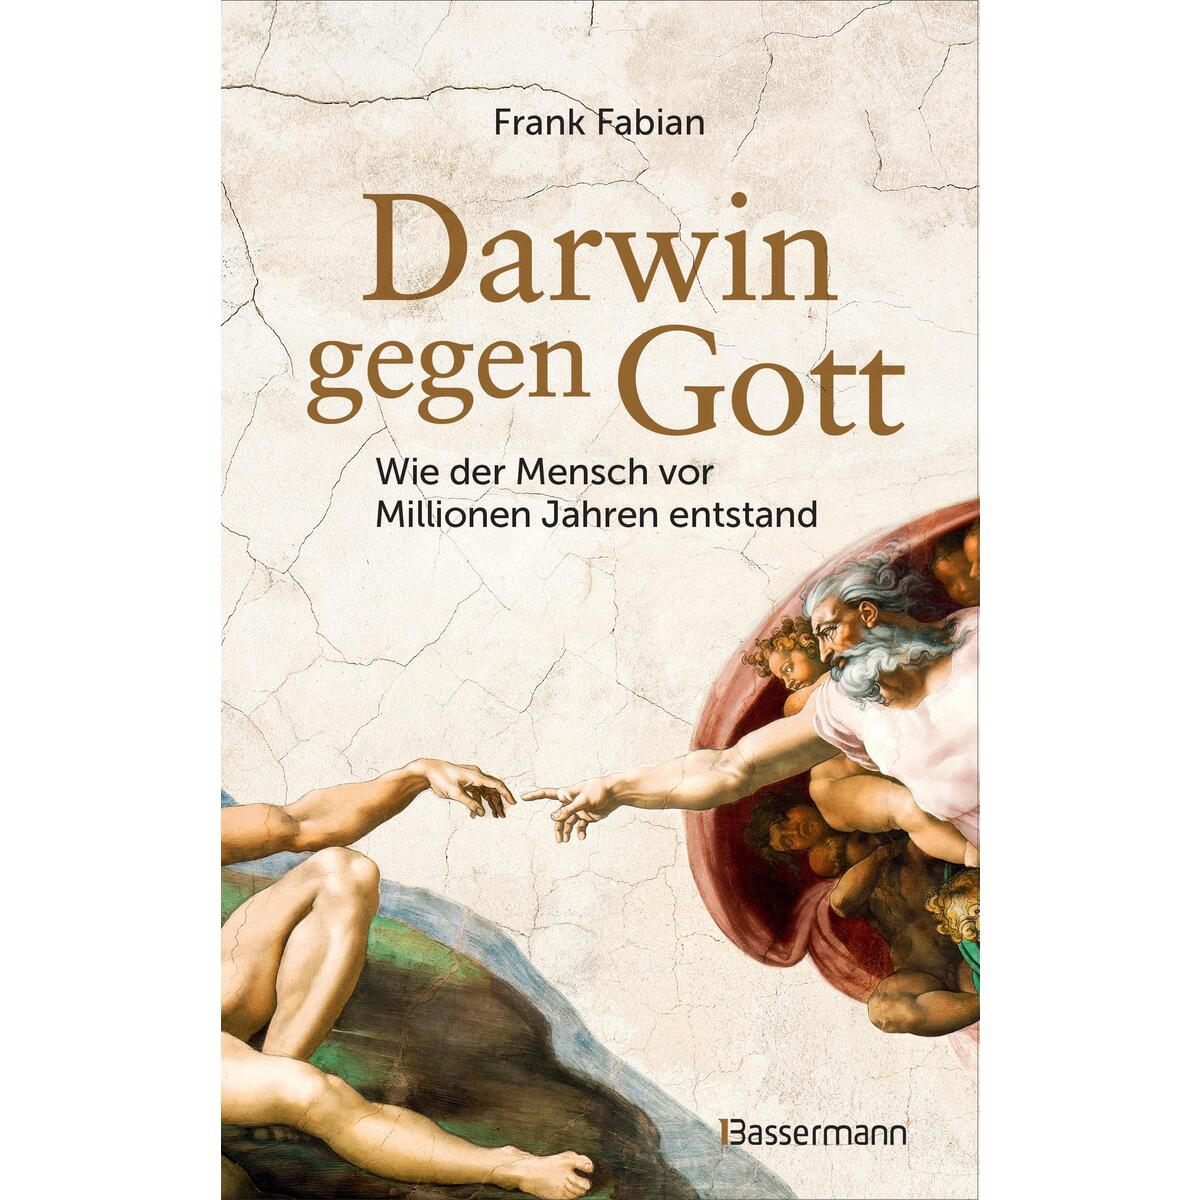 Darwin gegen Gott. Wie der Mensch vor Millionen Jahren entstand von Bassermann, Edition